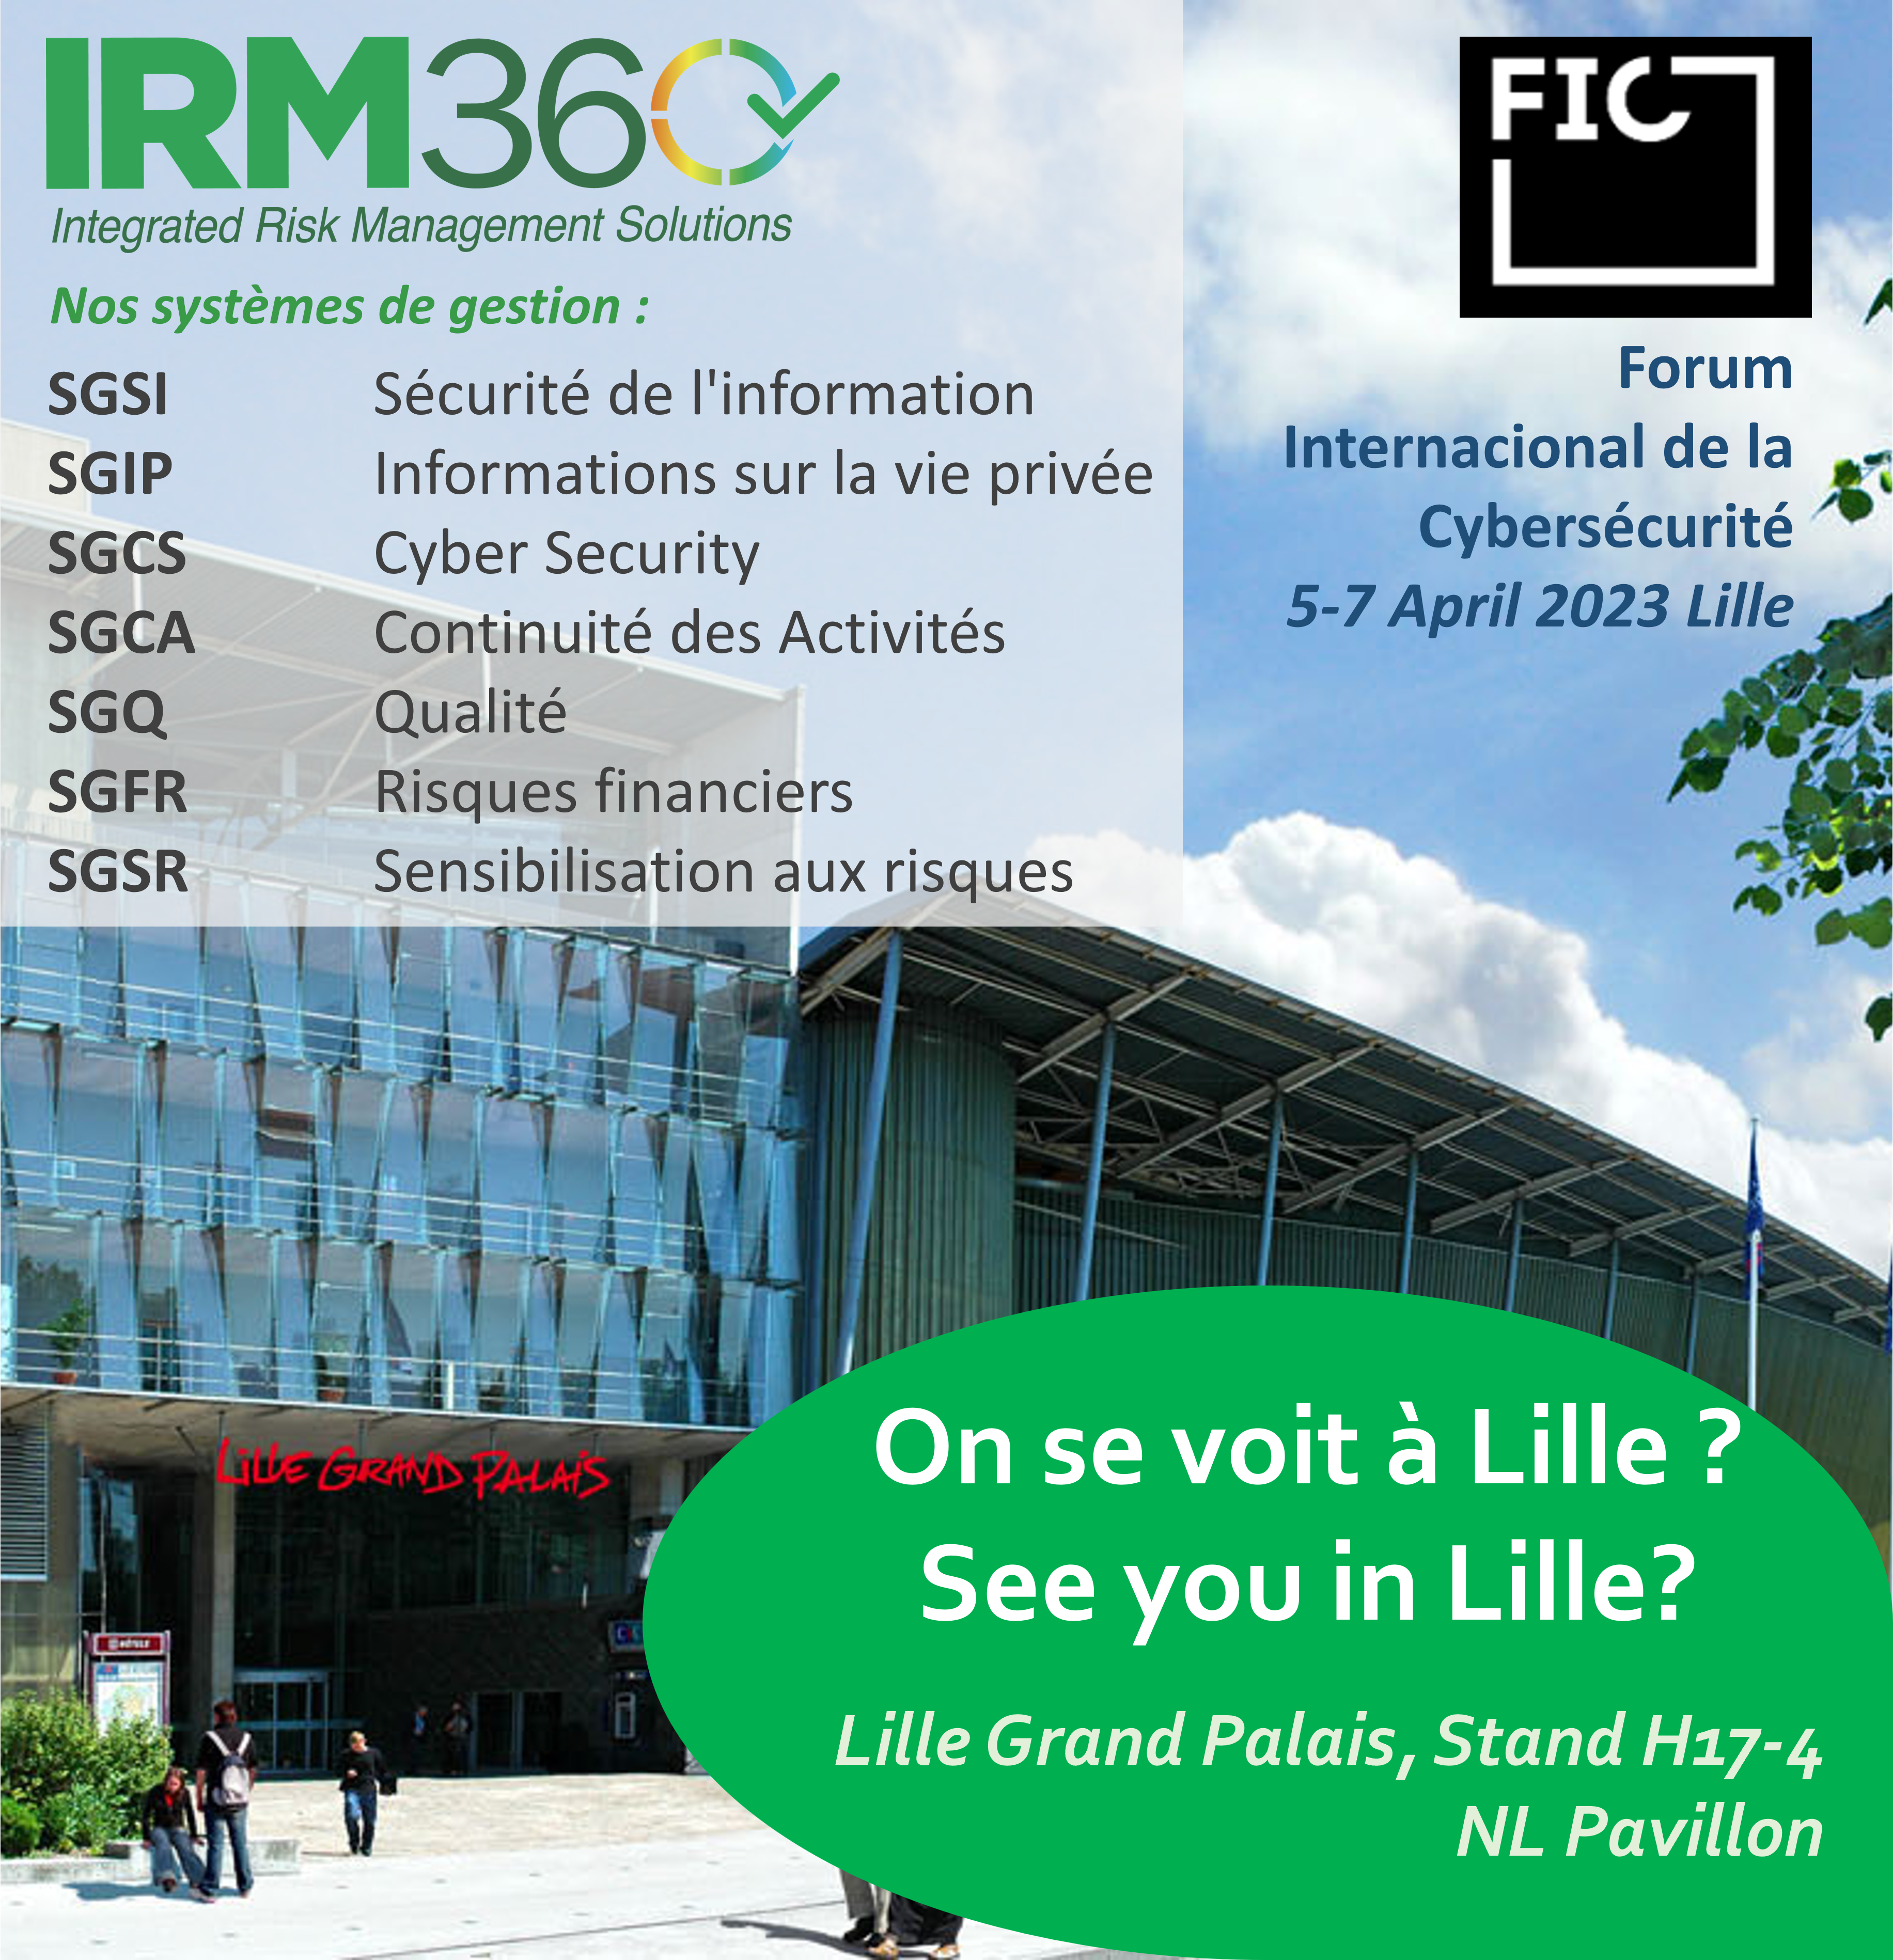 IRM360 presente en el FIC de Lille 